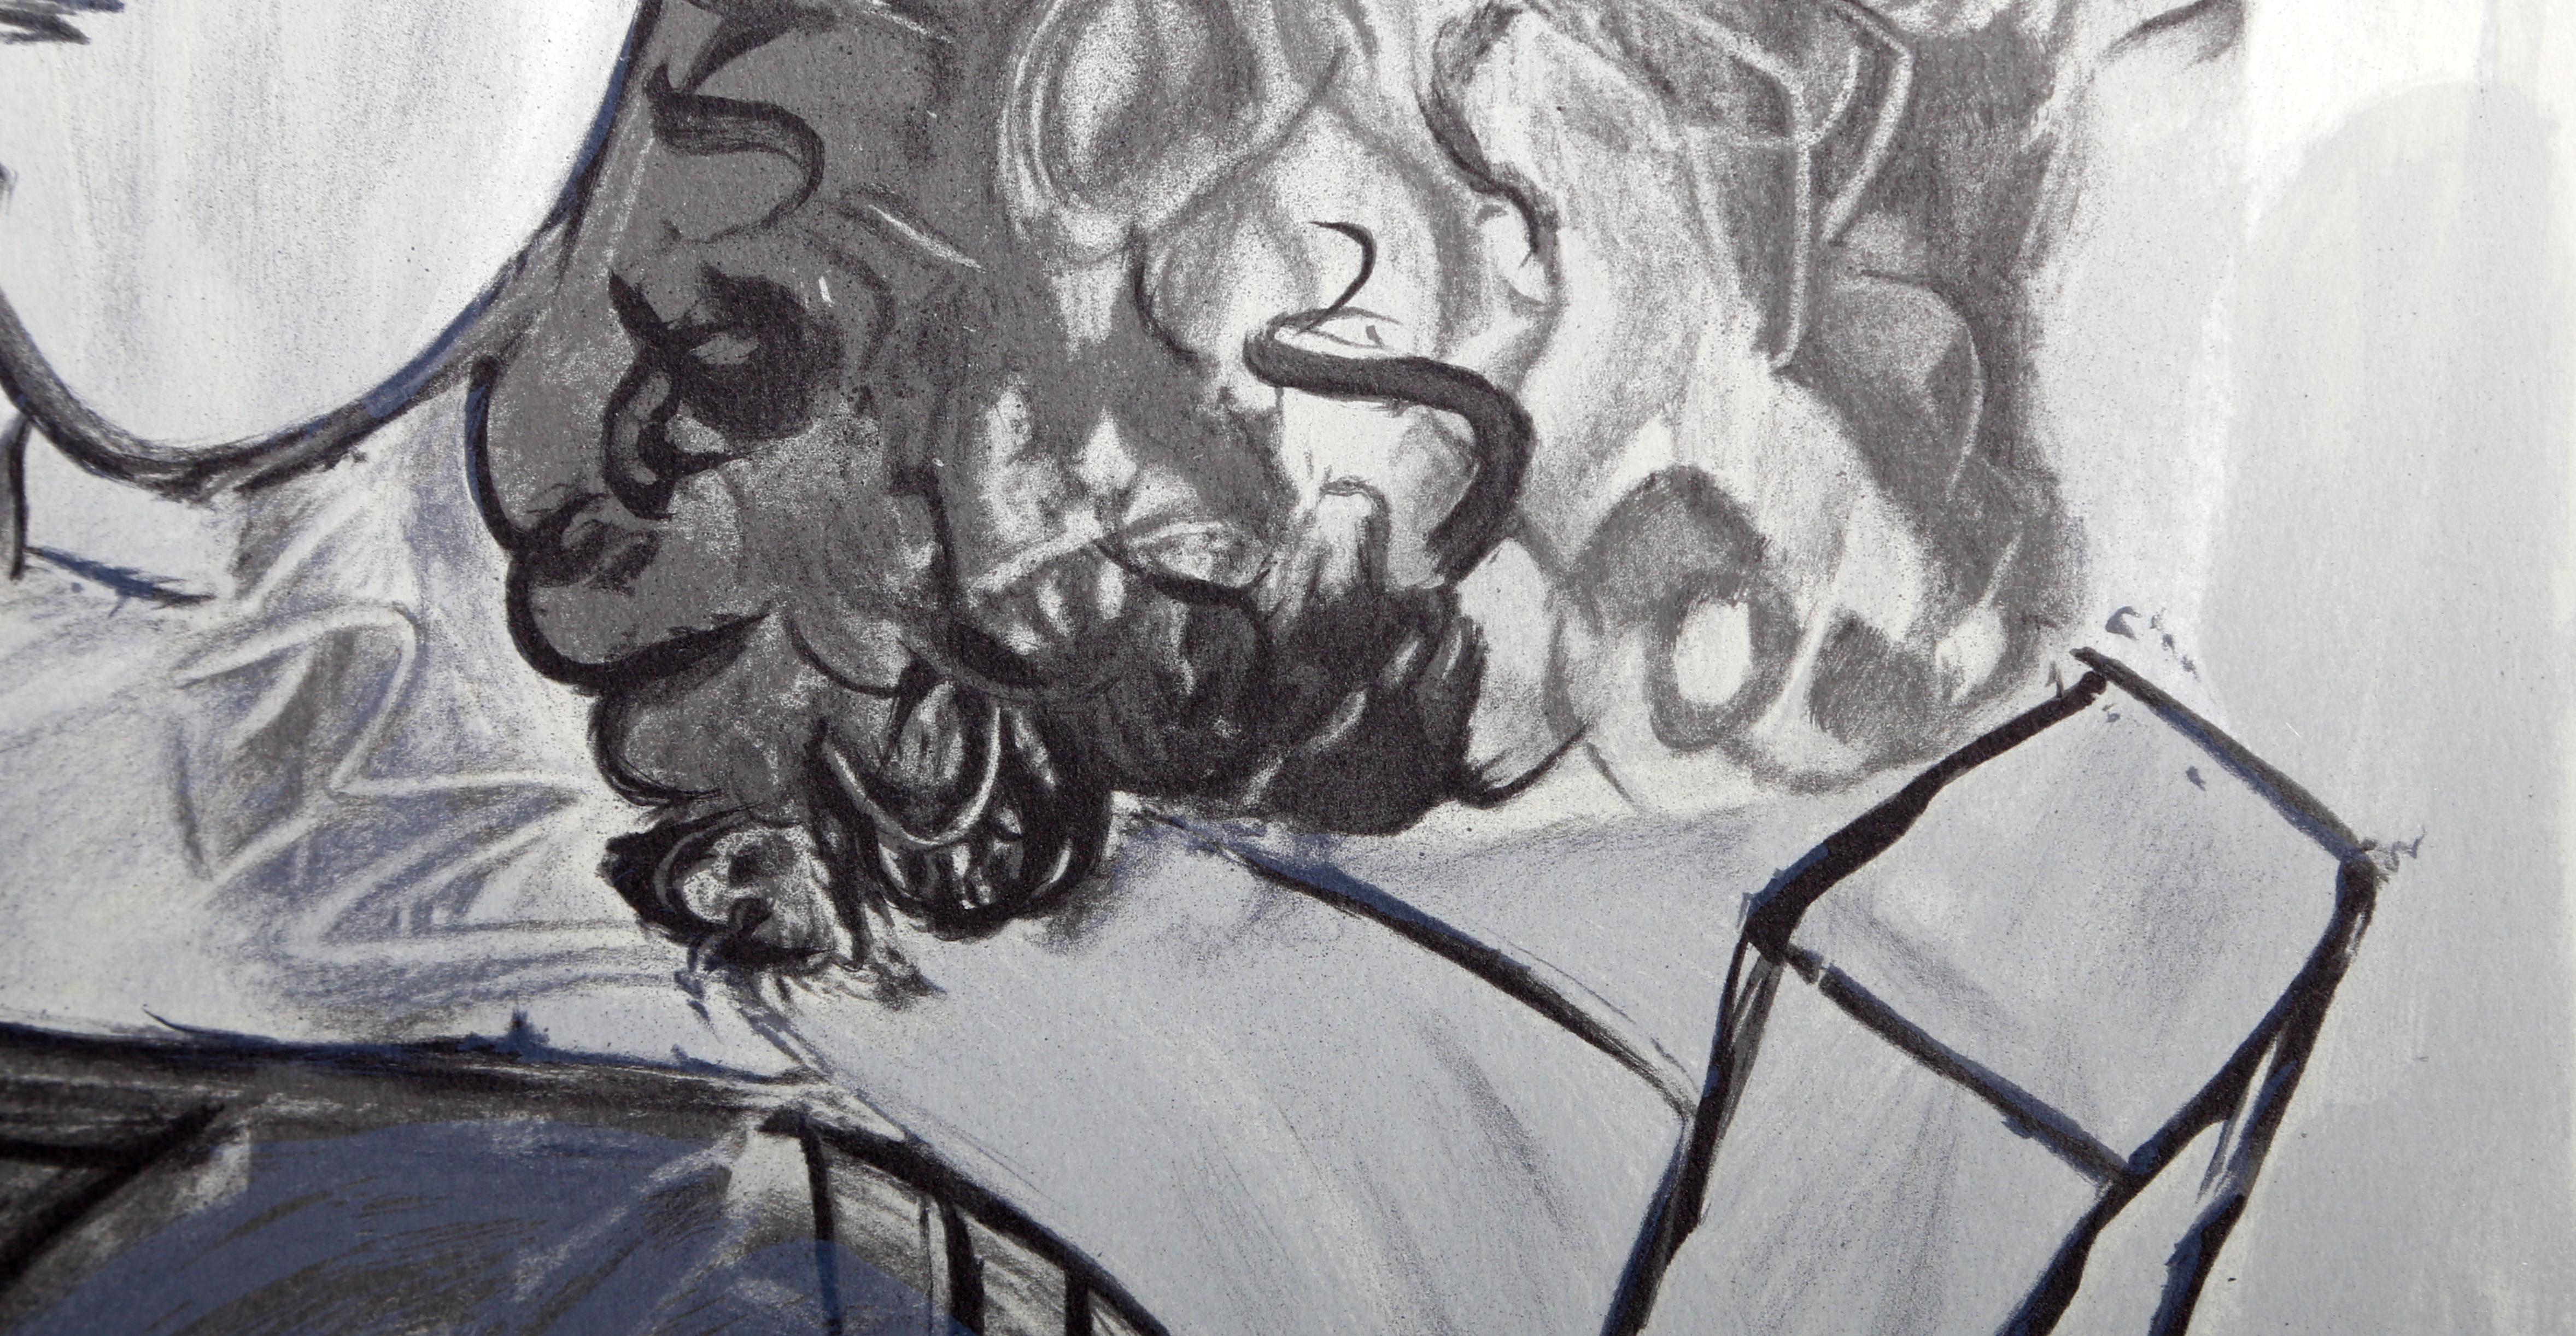 Femme aux Cheveux Bouclés - Print by Pablo Picasso